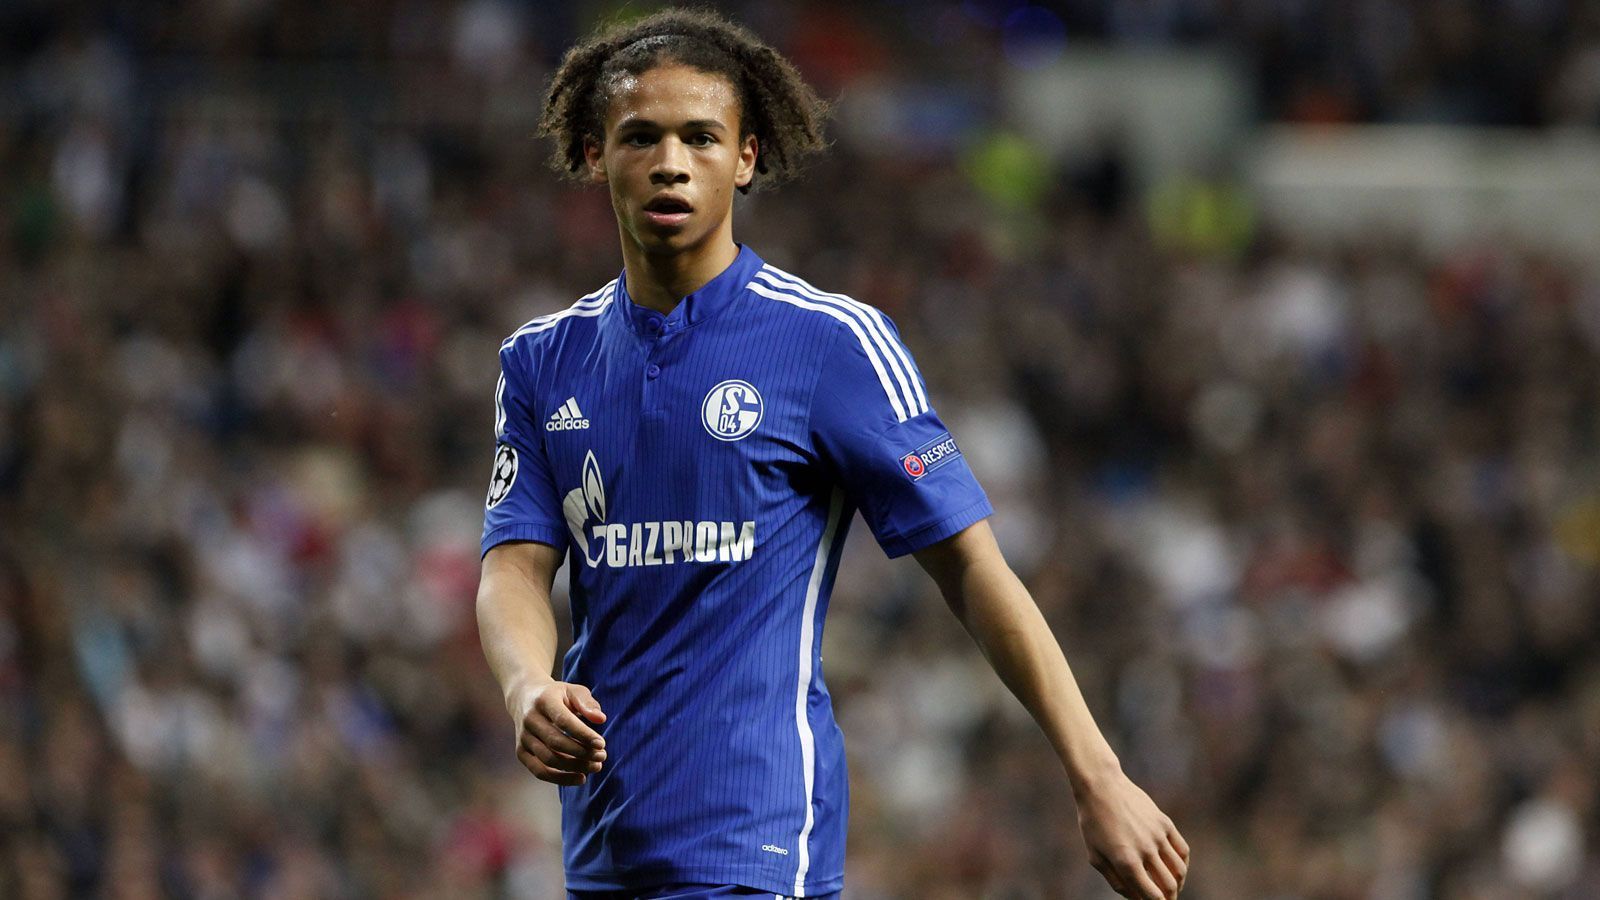 
                <strong>Platz 5: Leroy Sane</strong><br>
                Alter: 19 Jahre, ein Monat und 27 TageDamaliger Verein: FC Schalke 04Gegner und Endergebnis: 4:3 gegen Real Madrid (15/16)
              